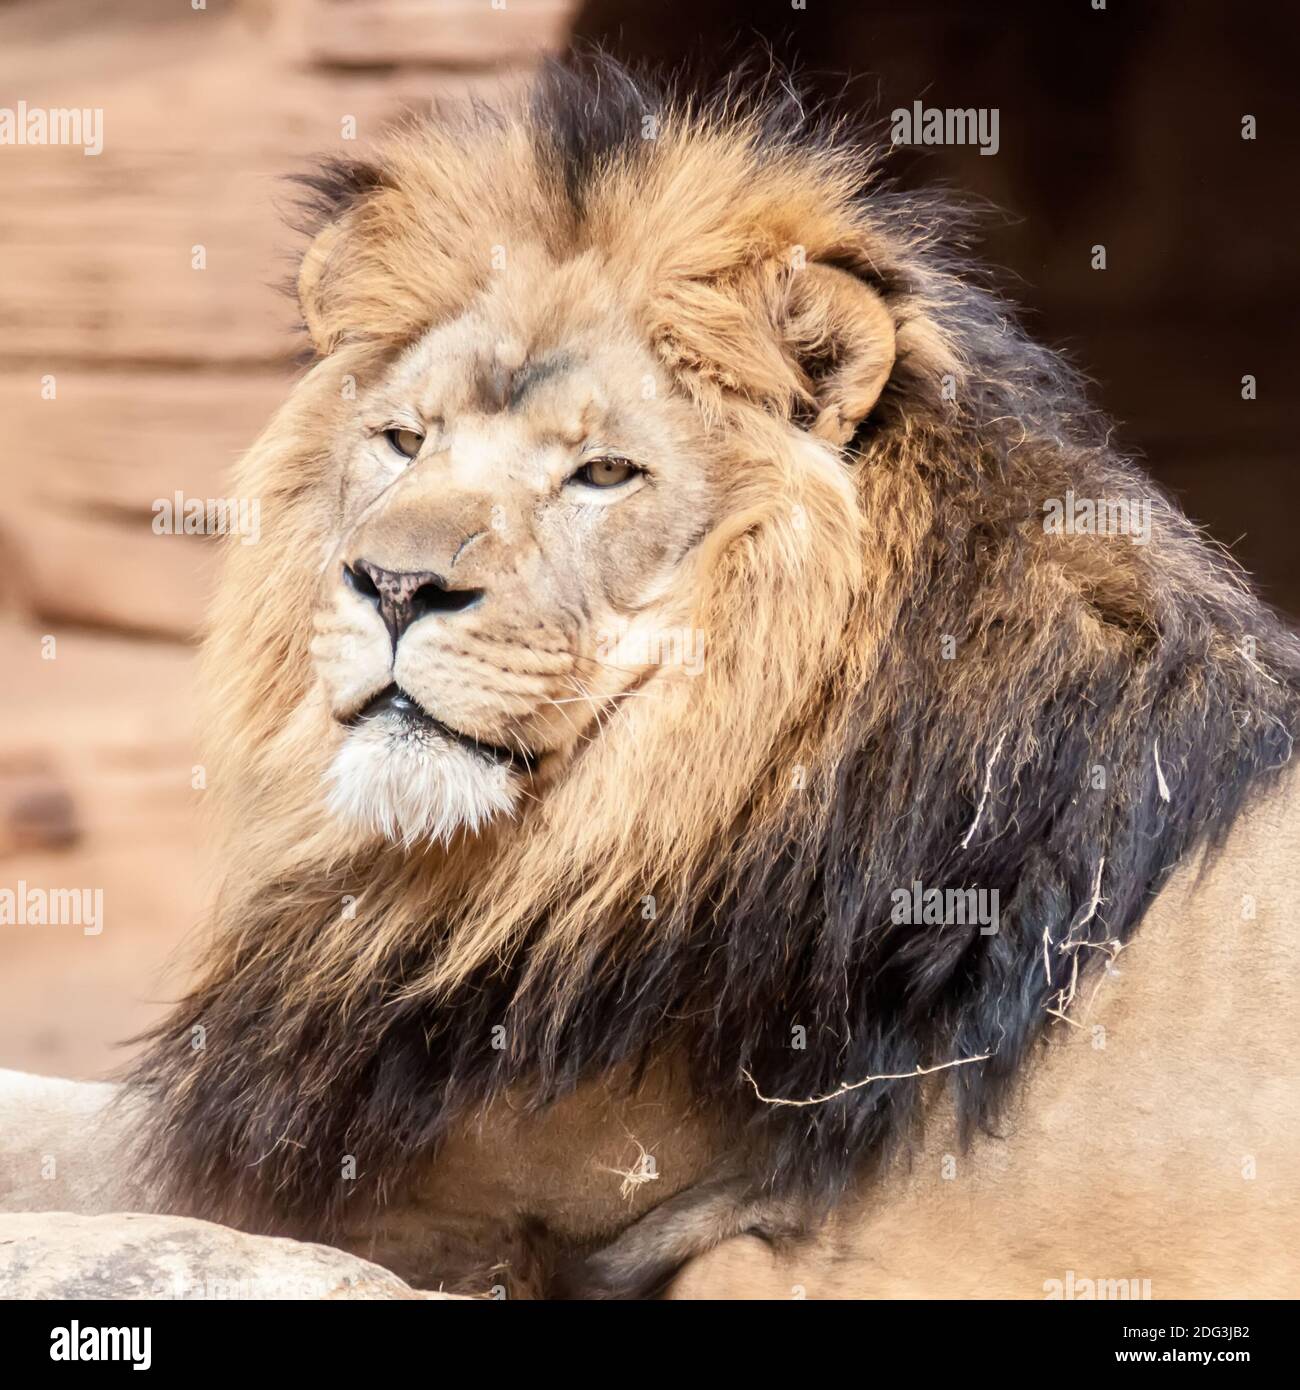 León, retrato del rey de las bestias Foto de stock